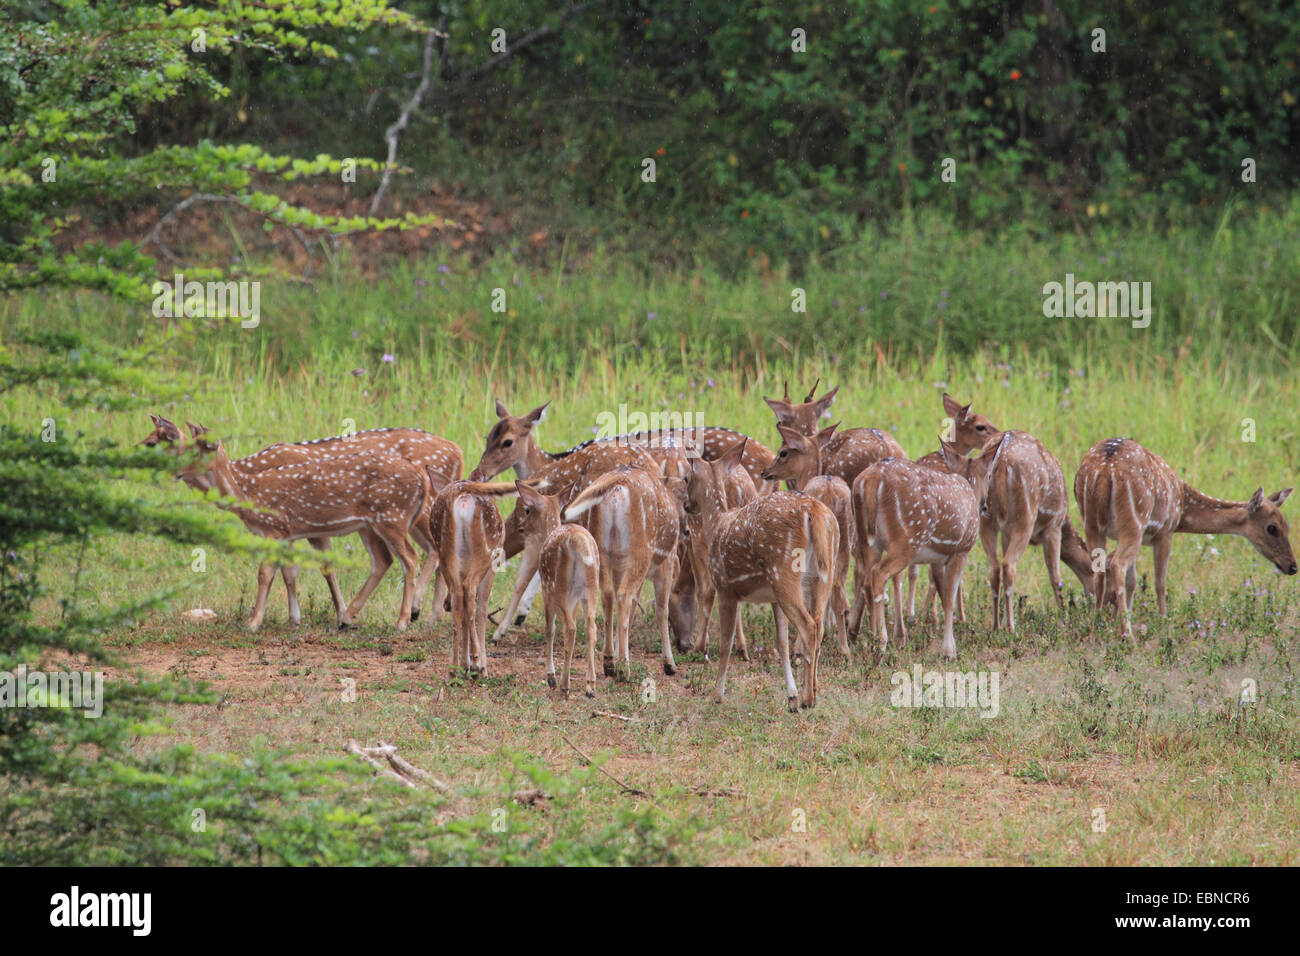 spotted deer, axis deer, chital (Axis axis, Cervus axis), herd of deers, Sri Lanka Stock Photo